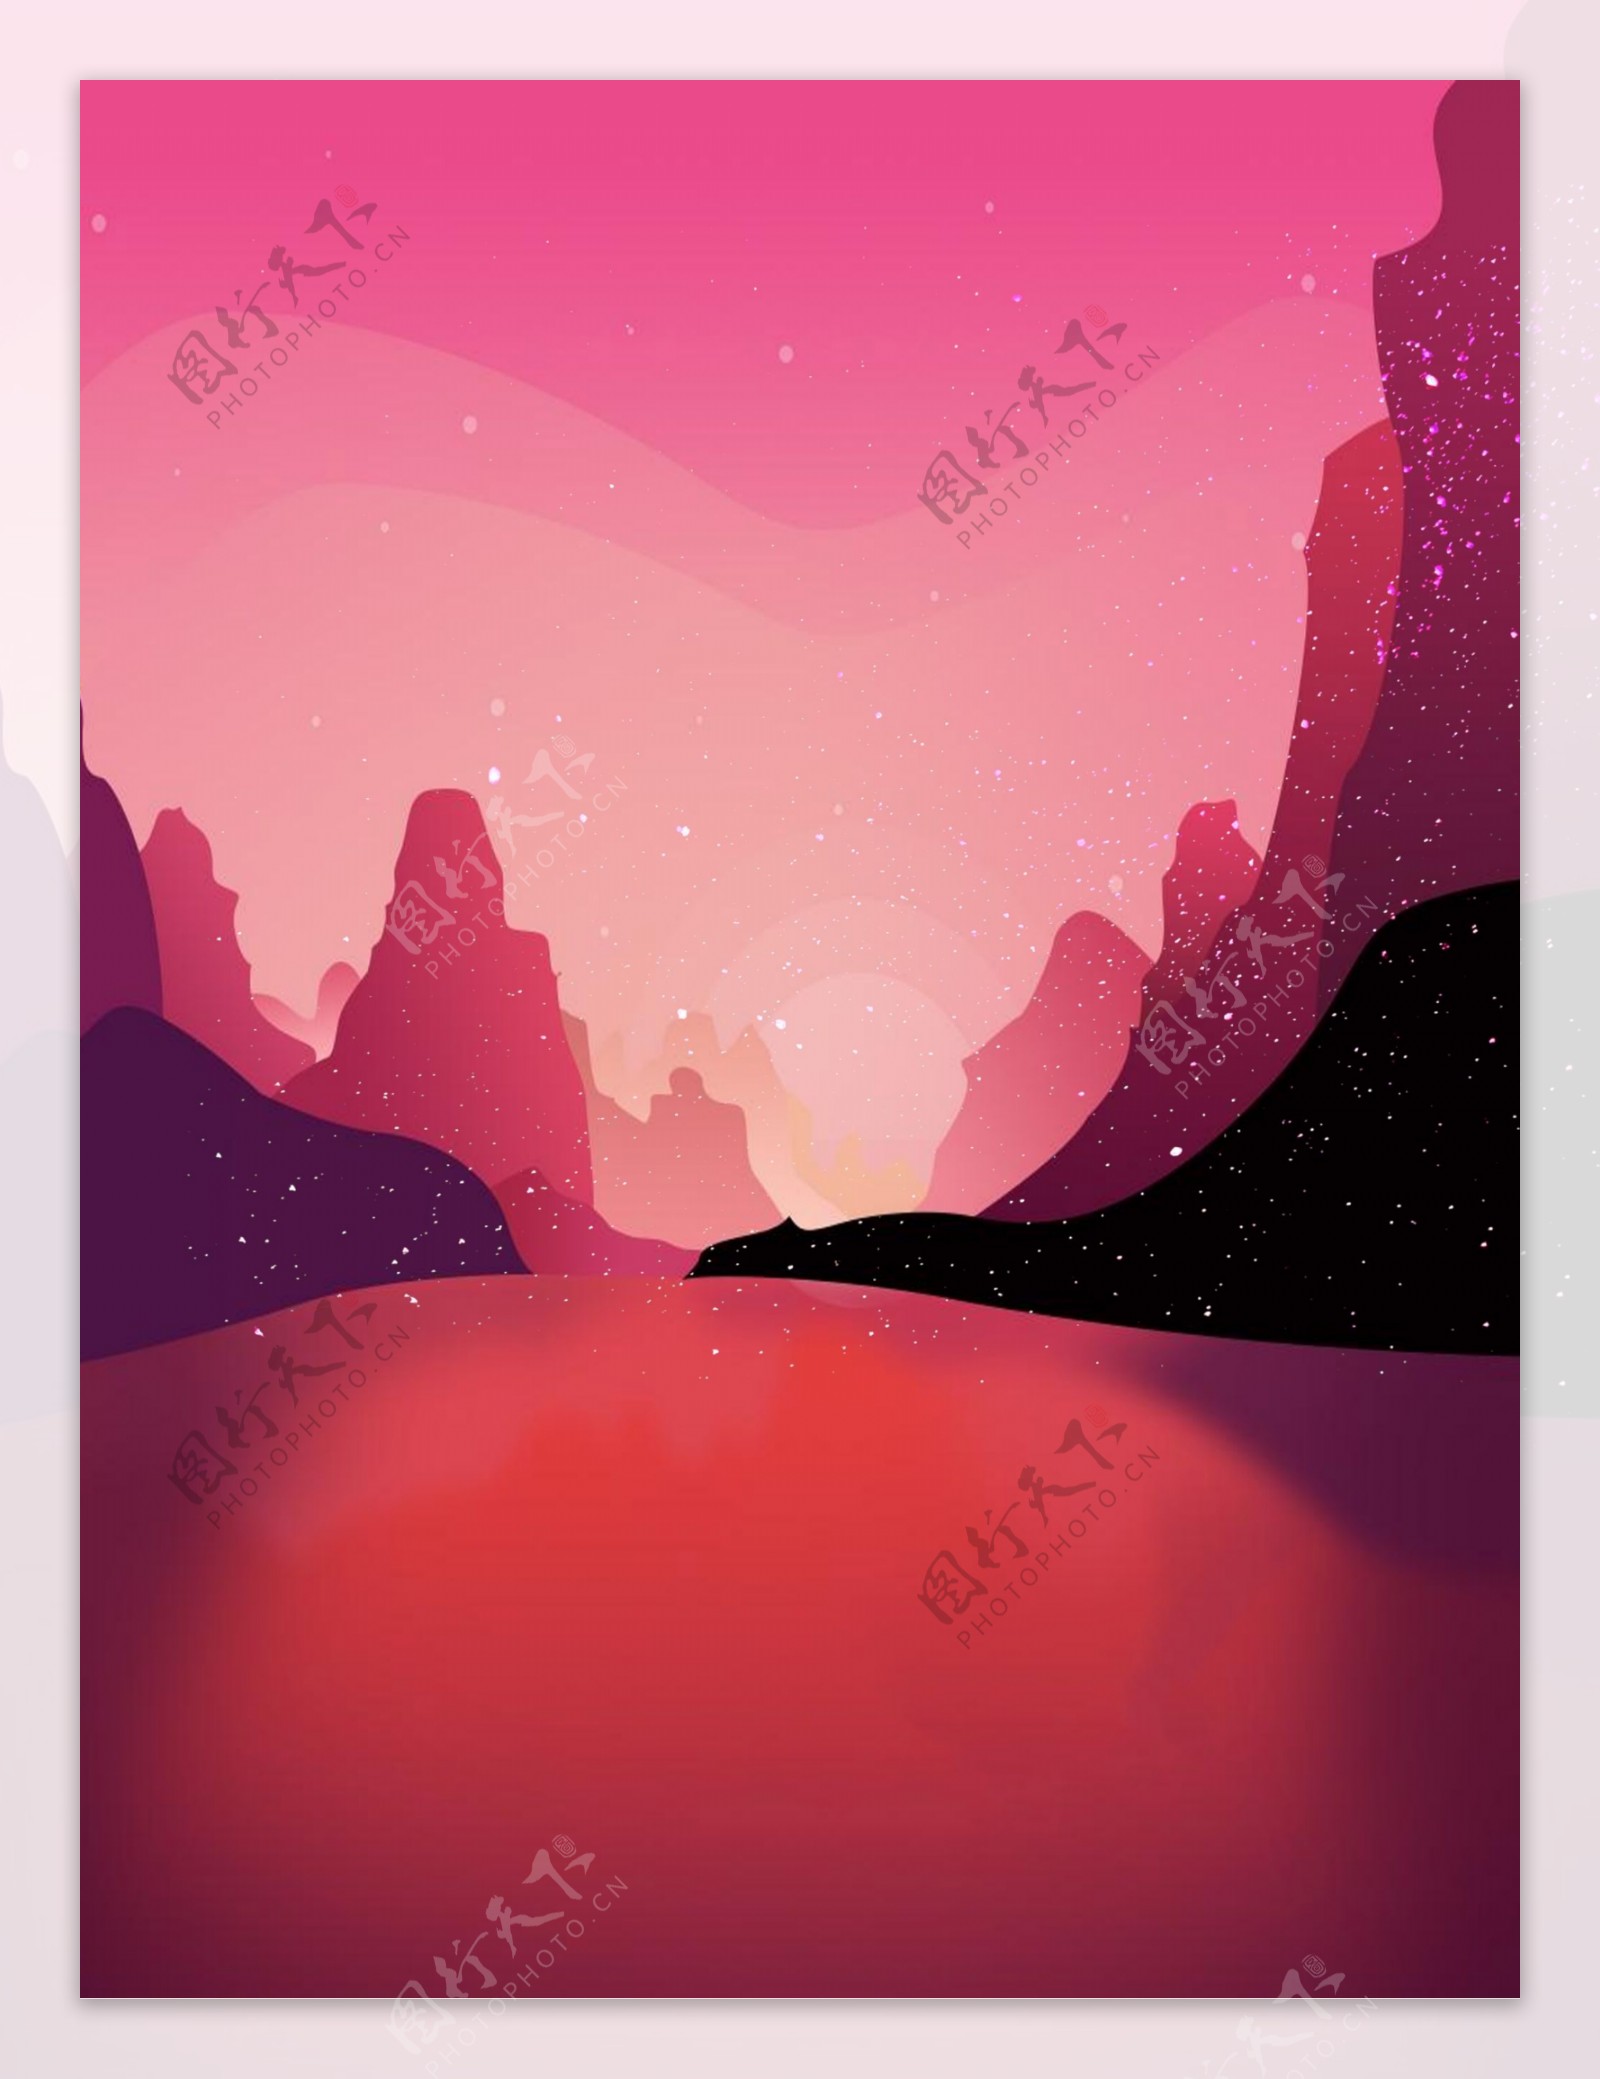 紫色手绘卡通山水风景背景